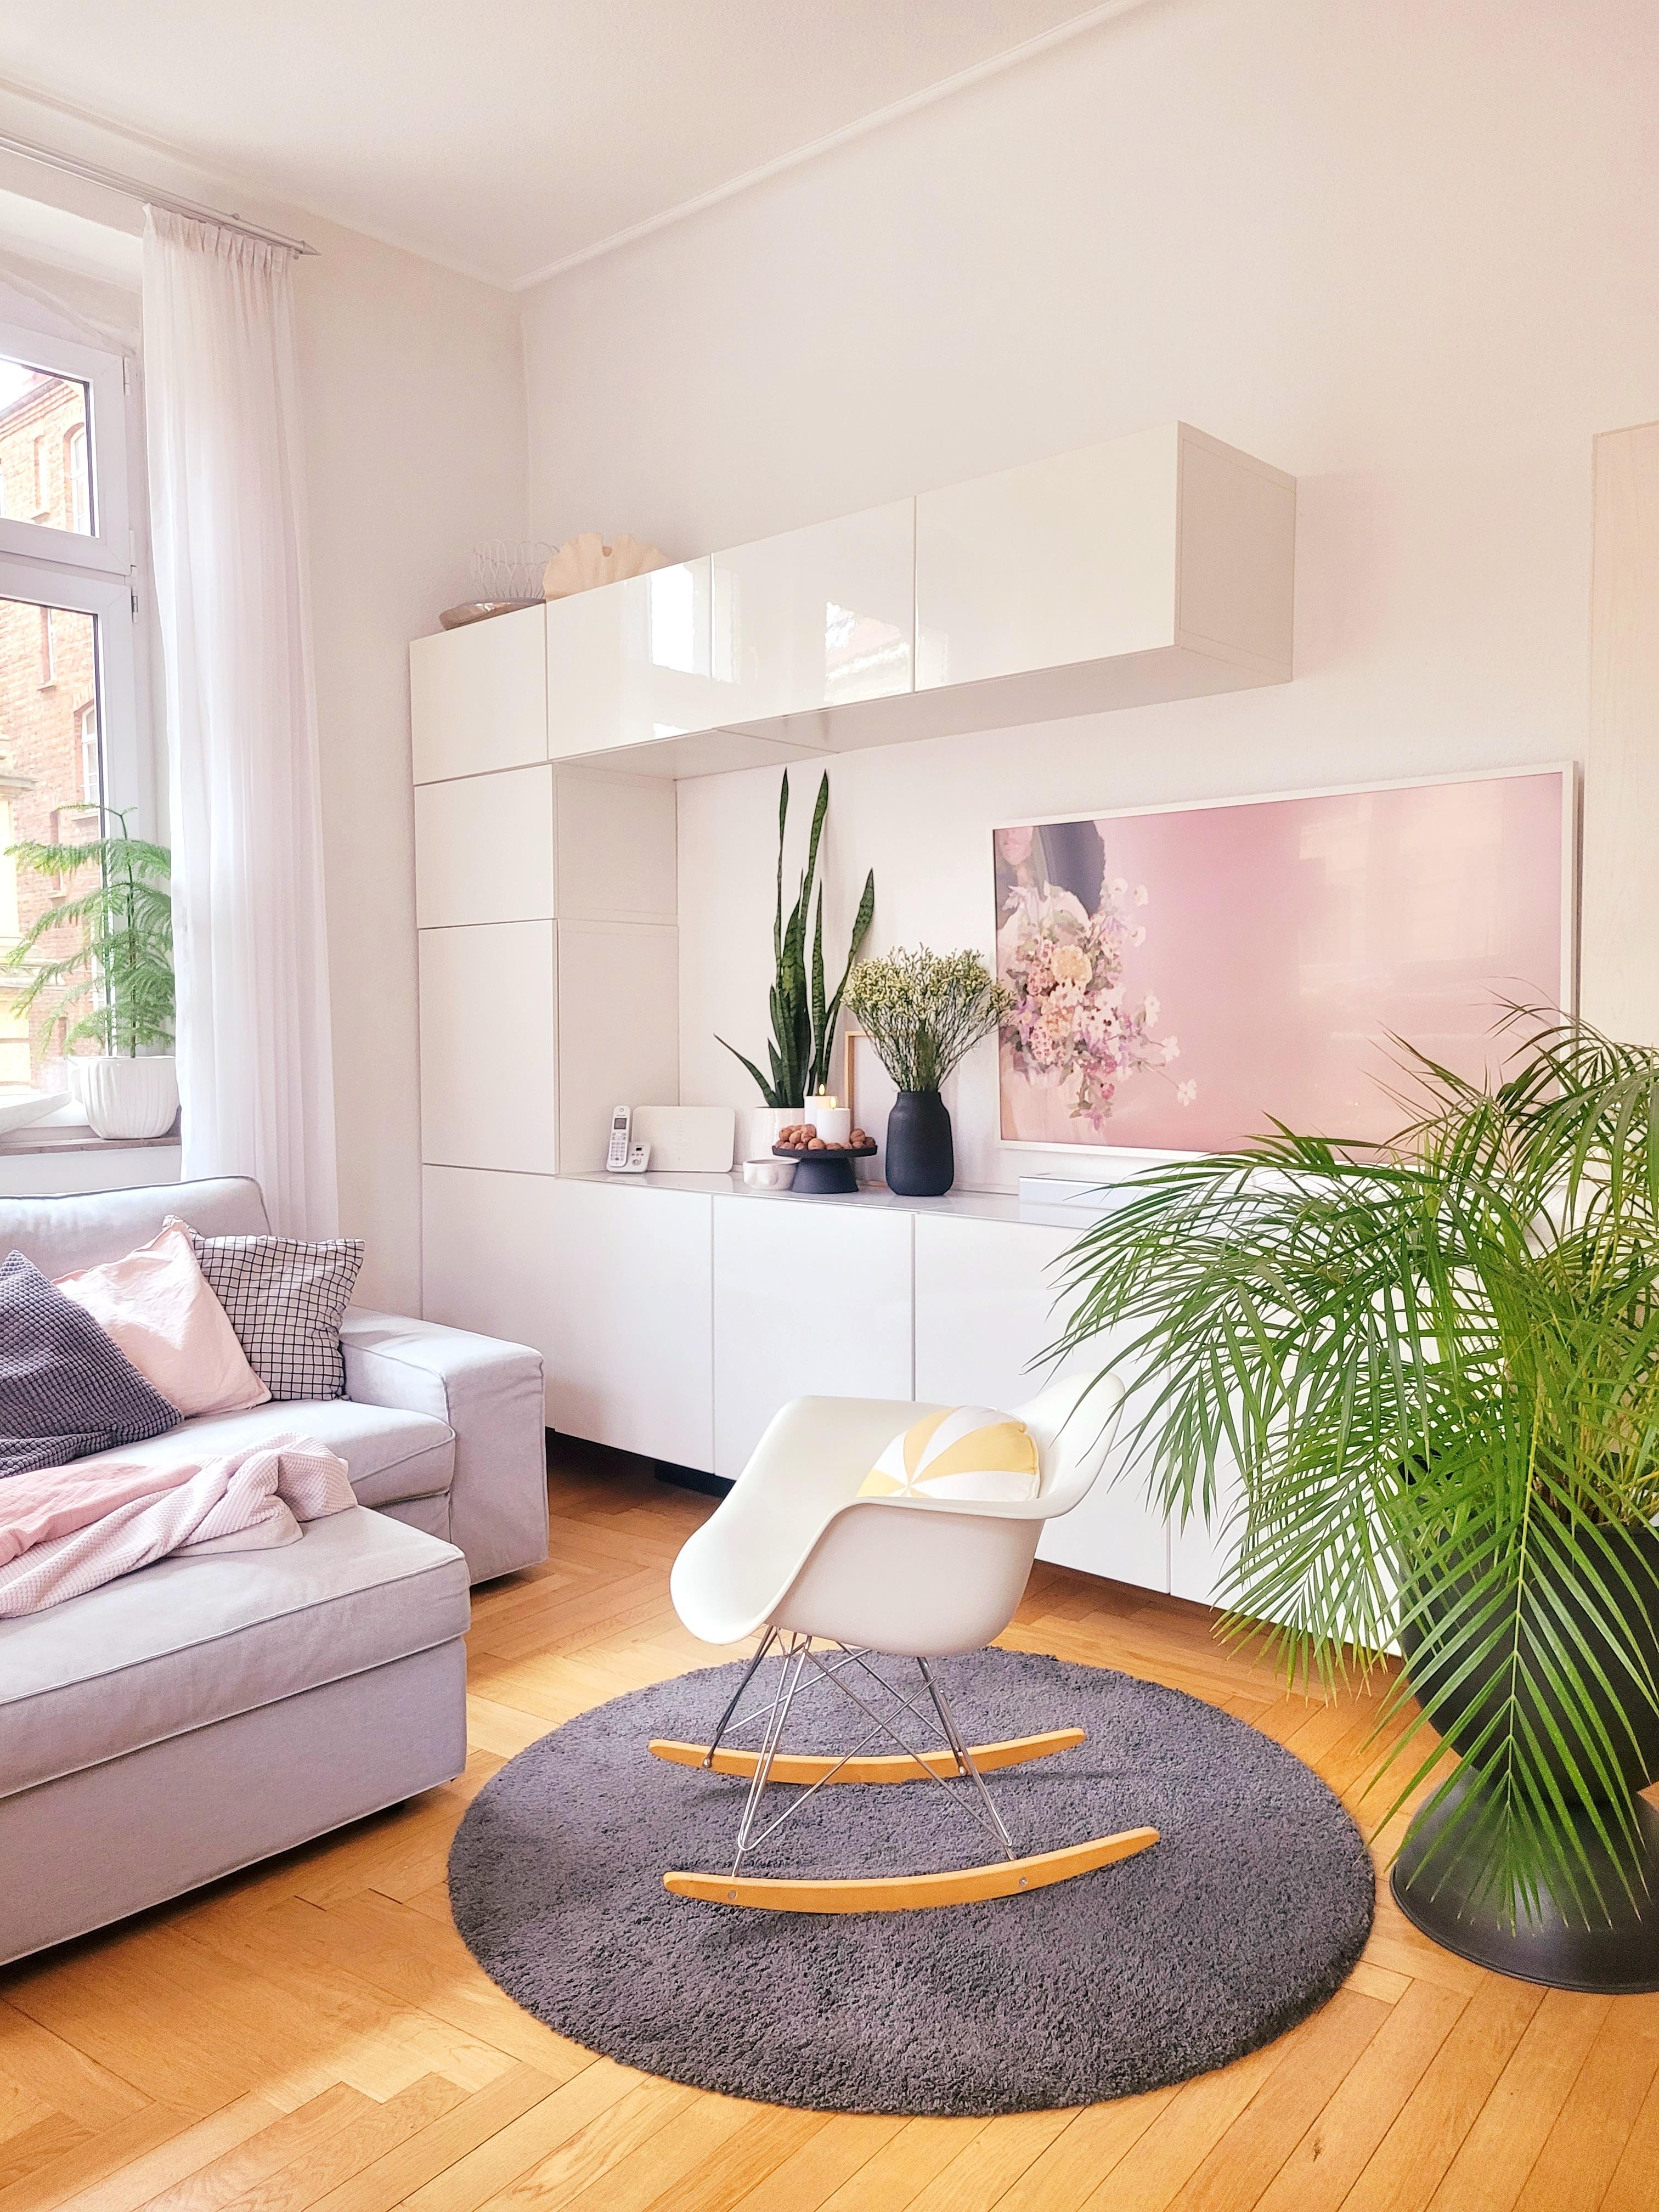 Donnerstag, liegt mir nicht!
#Wohnzimmer 
#Altbau 
#Sofa
#fernseher 
#Ikea
#vitra 
#livingroom 
#besta
#Schaukelstuhl 
